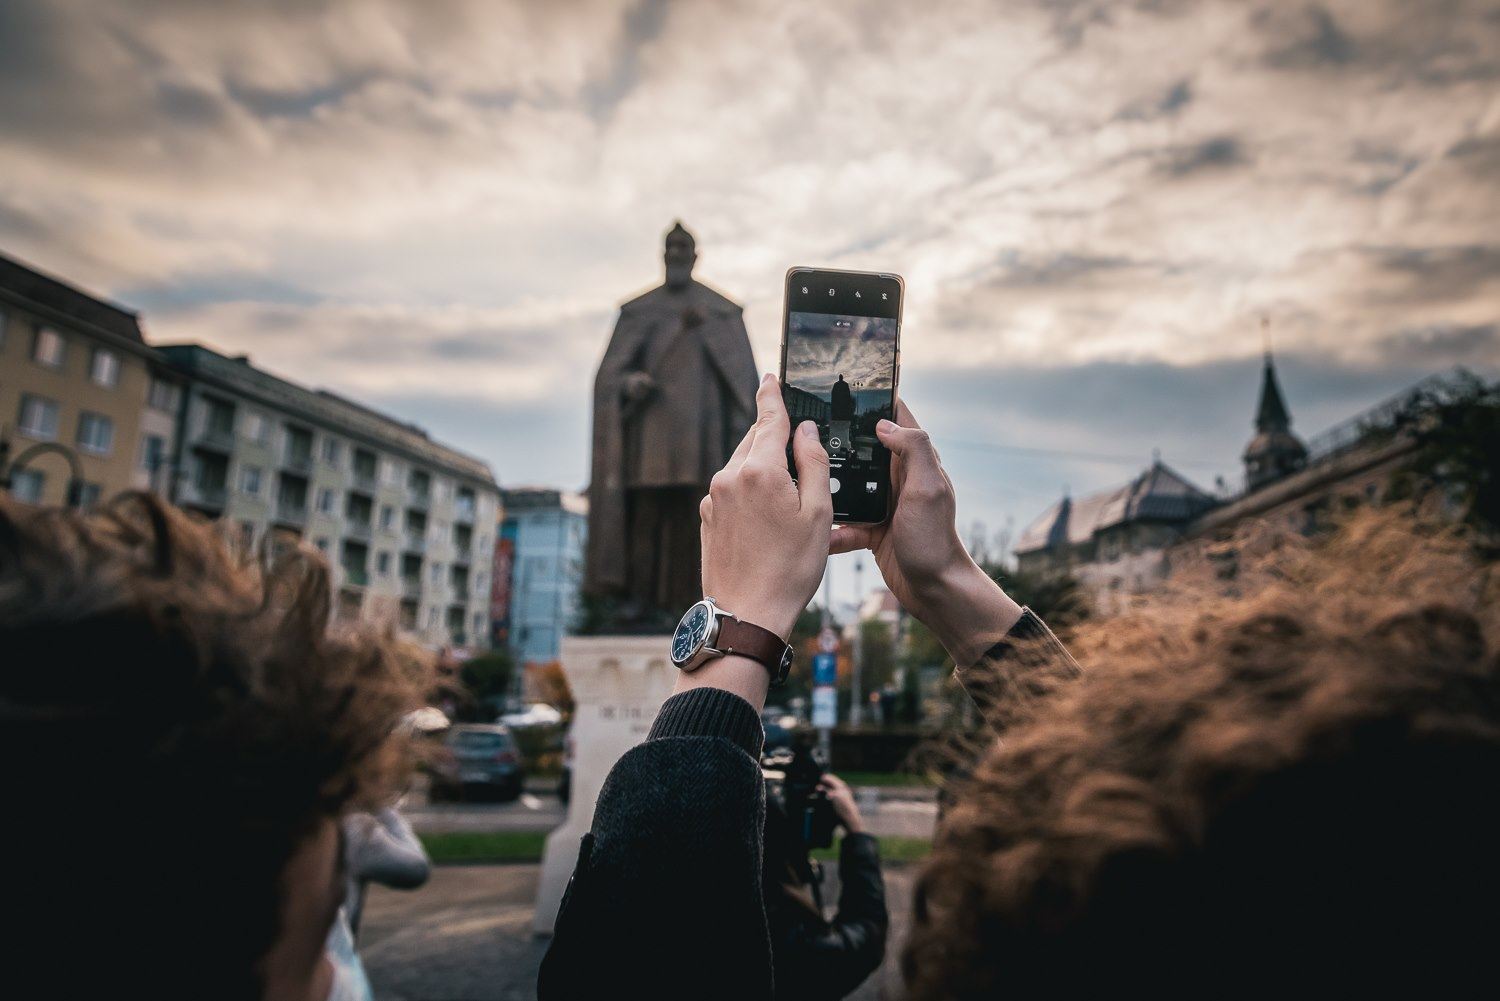 Inaugurada la estatua del Príncipe Bethlen de Transilvania en Marosvásárhely Targu Mures